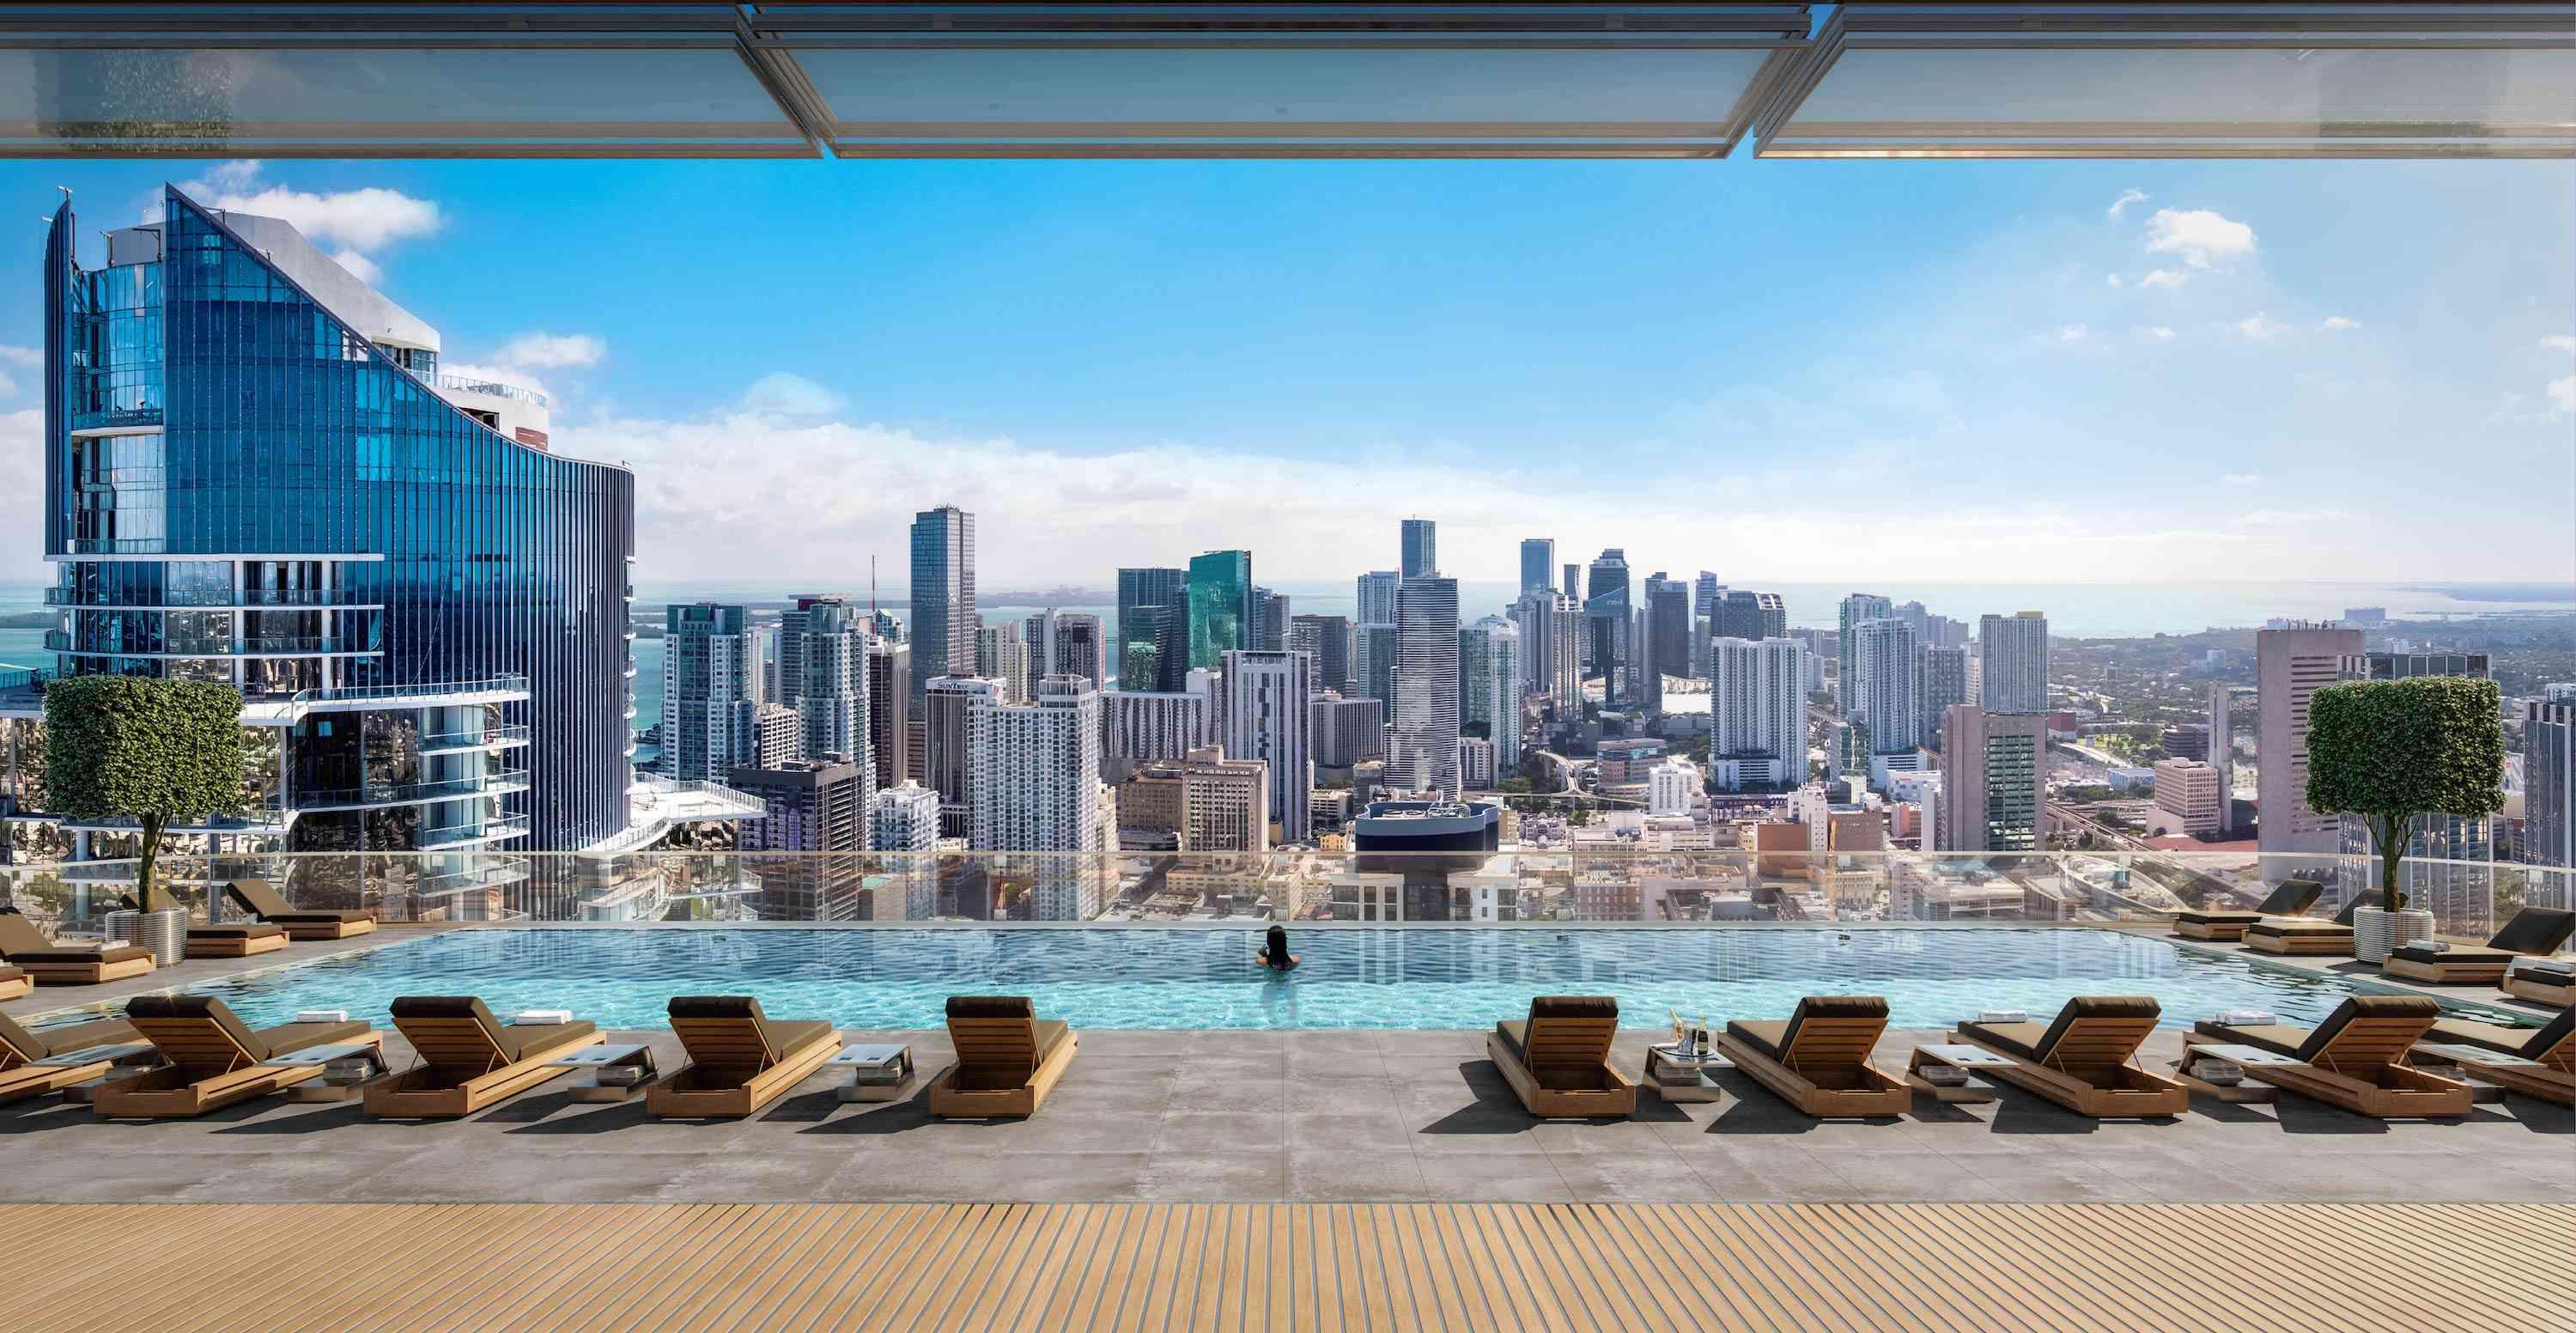 Legacy Miami Pool Deck overlooking Miami